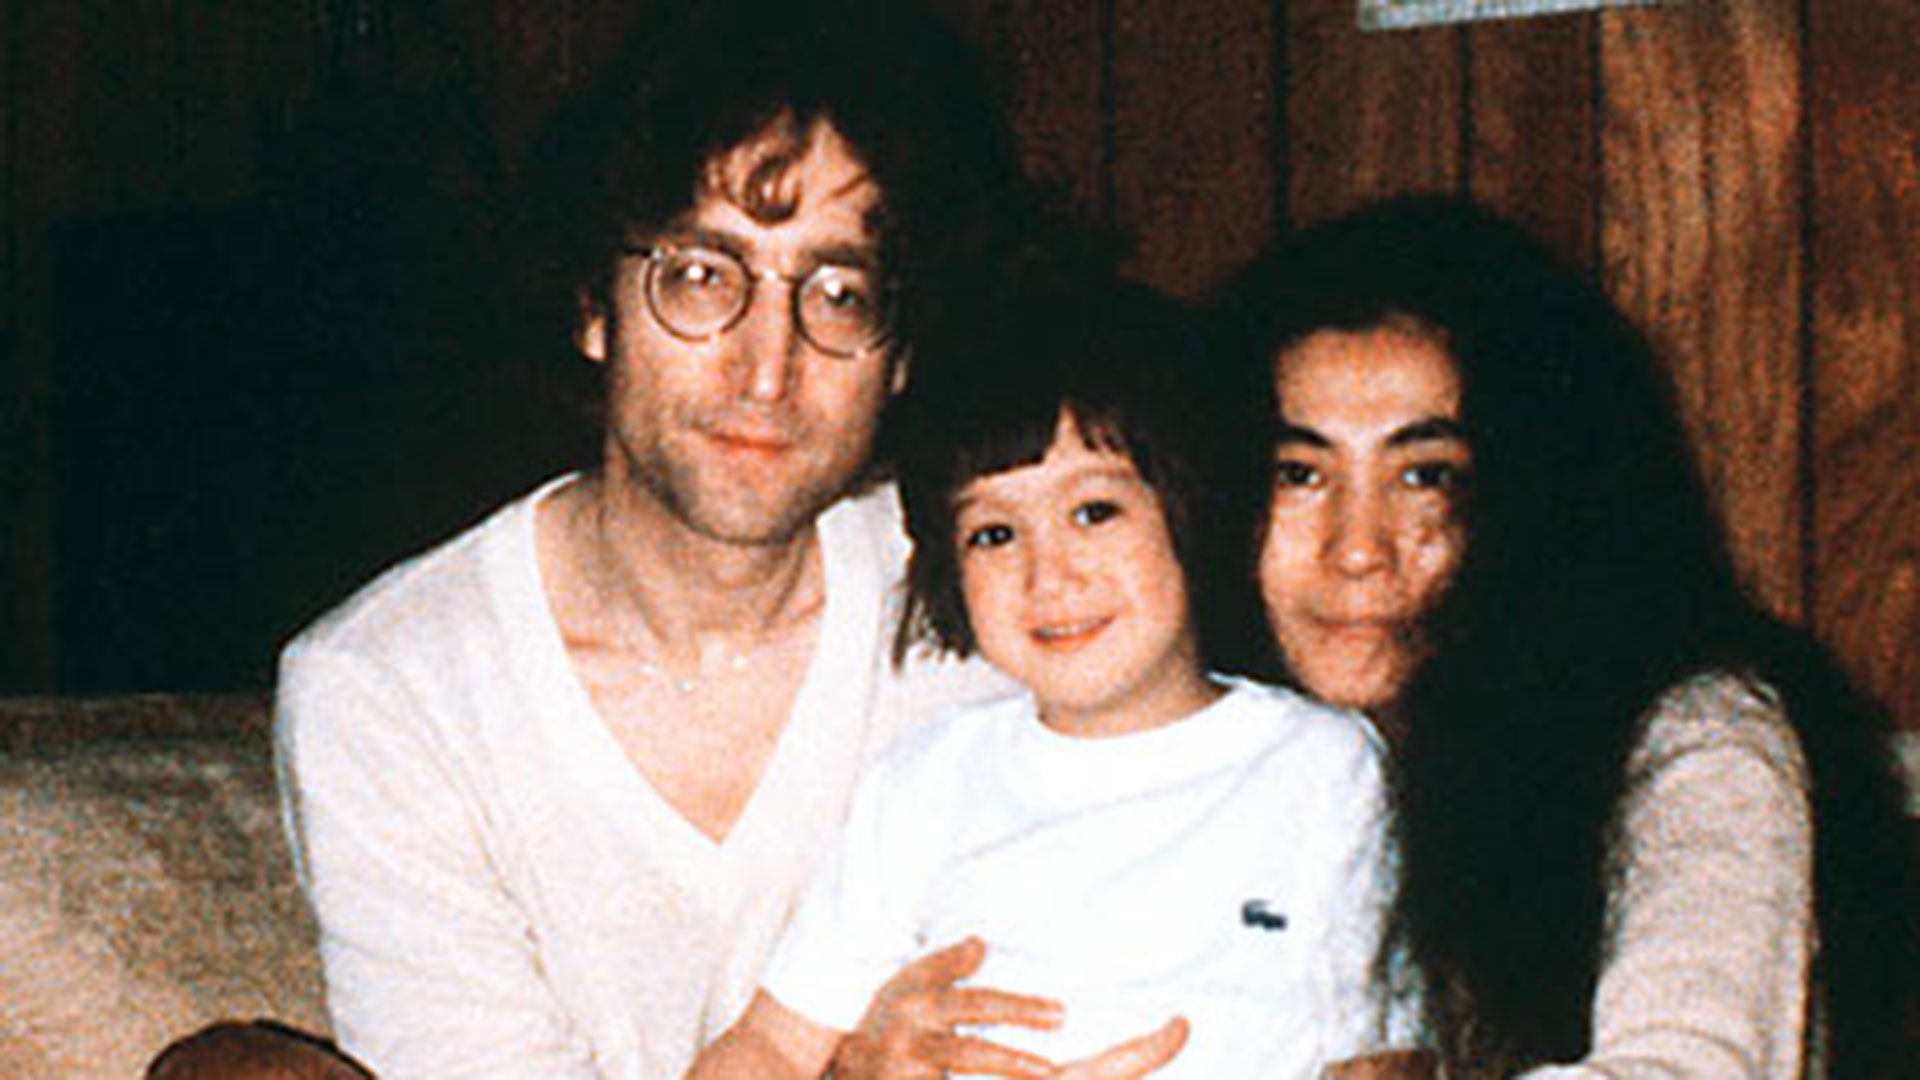 La distancia entre John y Julian se acrecentó con el nacimiento de Sean, el hijo que tuvo con Yoko Ono